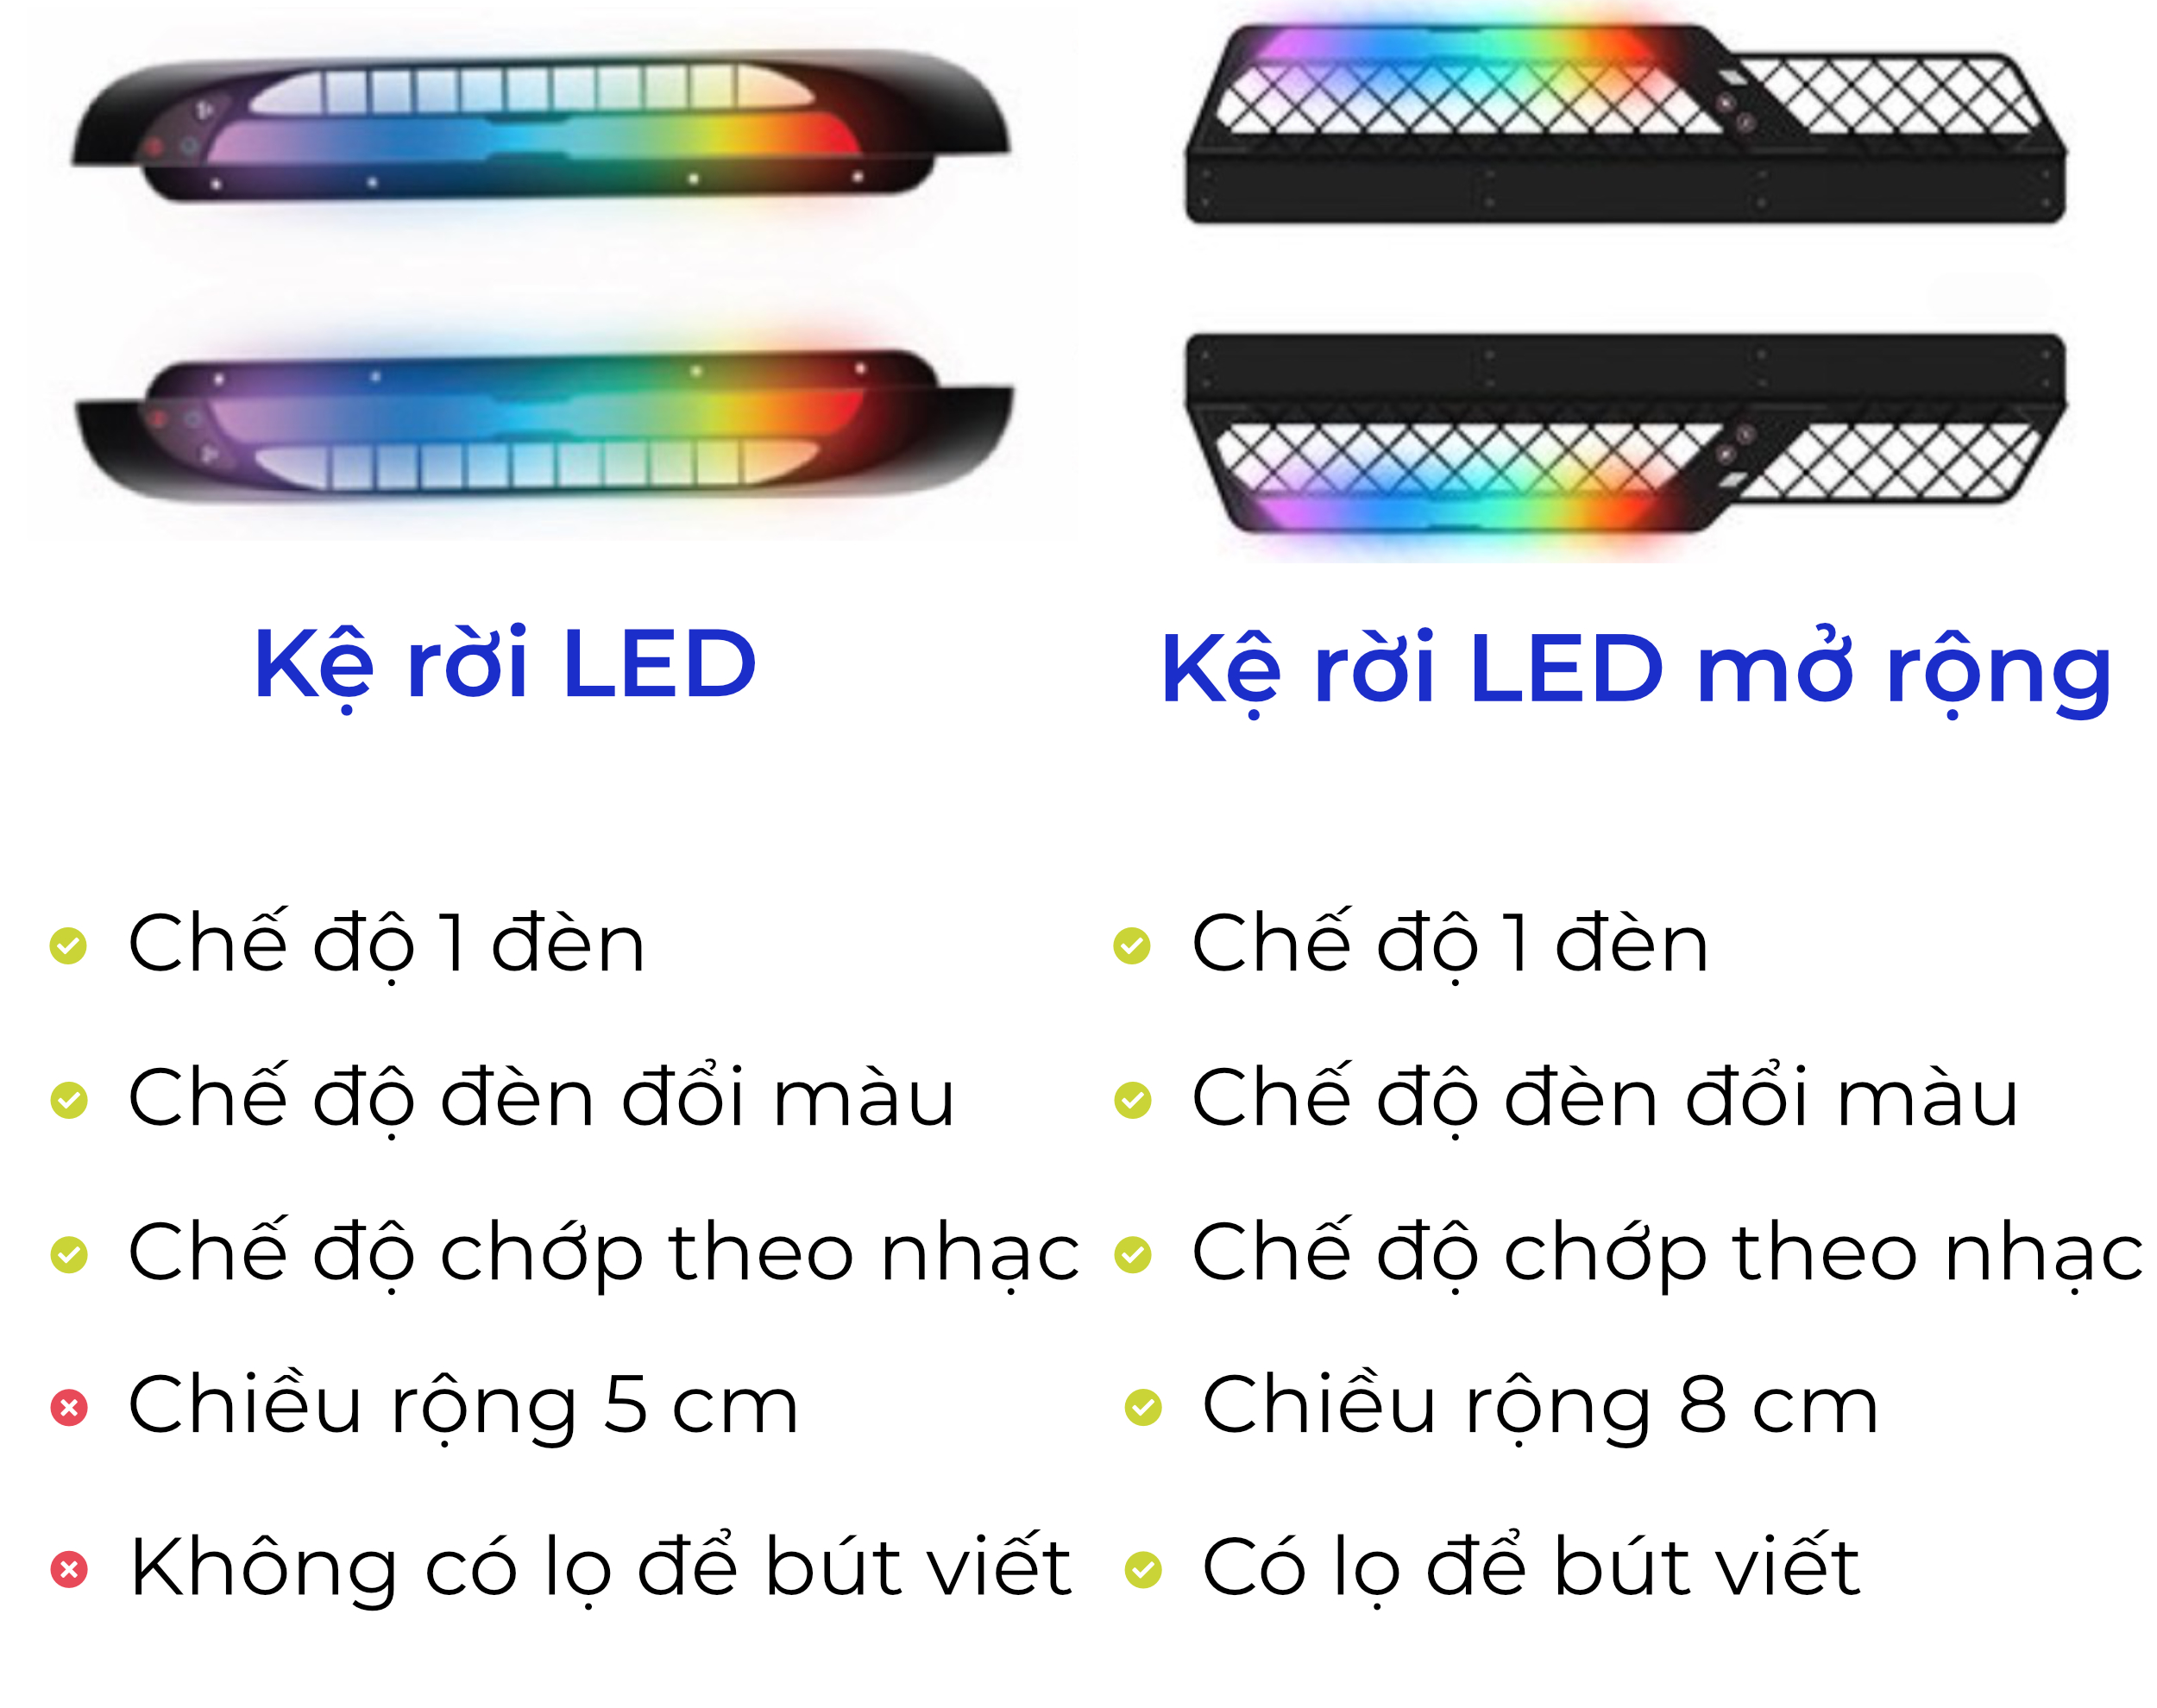 Kệ đèn LED trang trí cho bàn iCockpit, có chế độ chớp theo tiếng nhạc